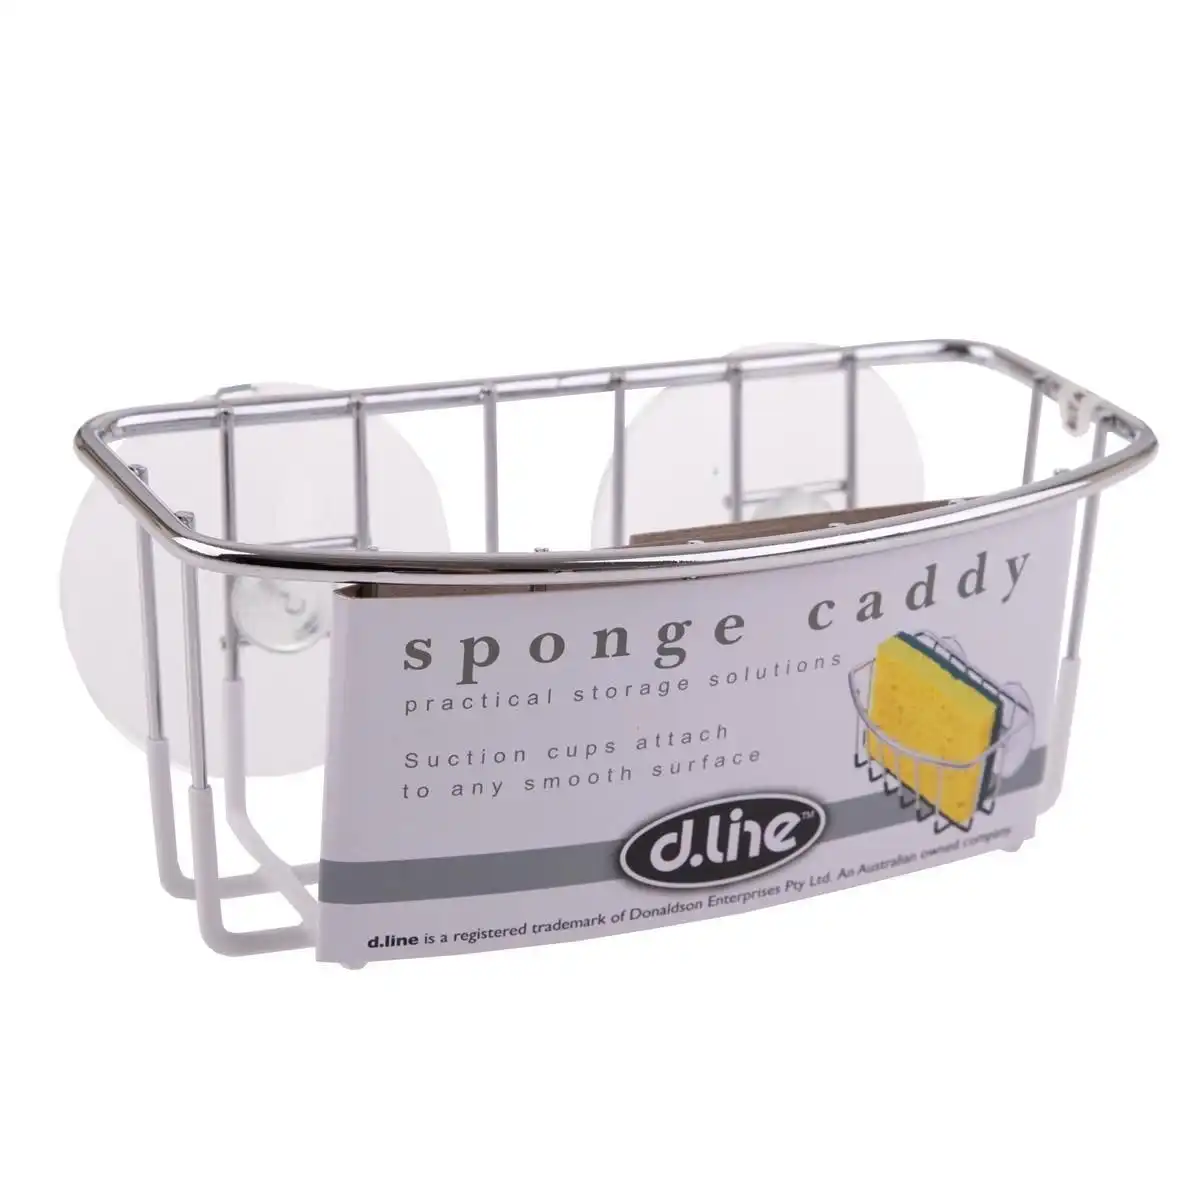 Dline Chrome Sponge Caddy